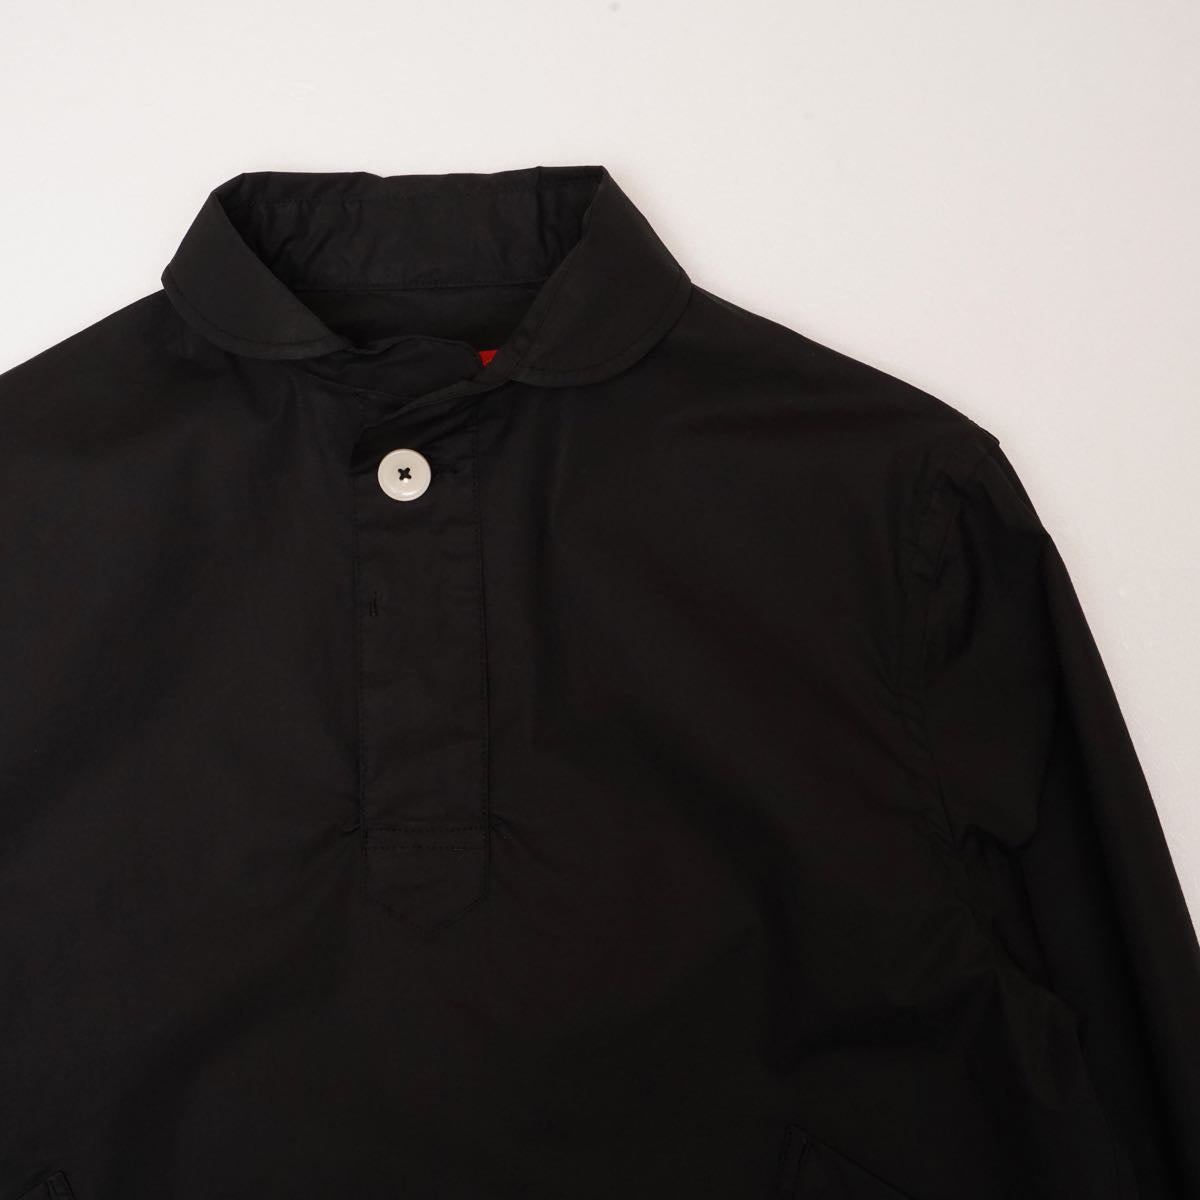 アドラーブル オリジナル プルオーバーシャツ ブラック ペルヴィアンピマコットン ADOLUVLE ORIGINAL PULLOVER SHIRTS  BLACK PERUVIAN PIMA COTTON MADE IN JAPAN